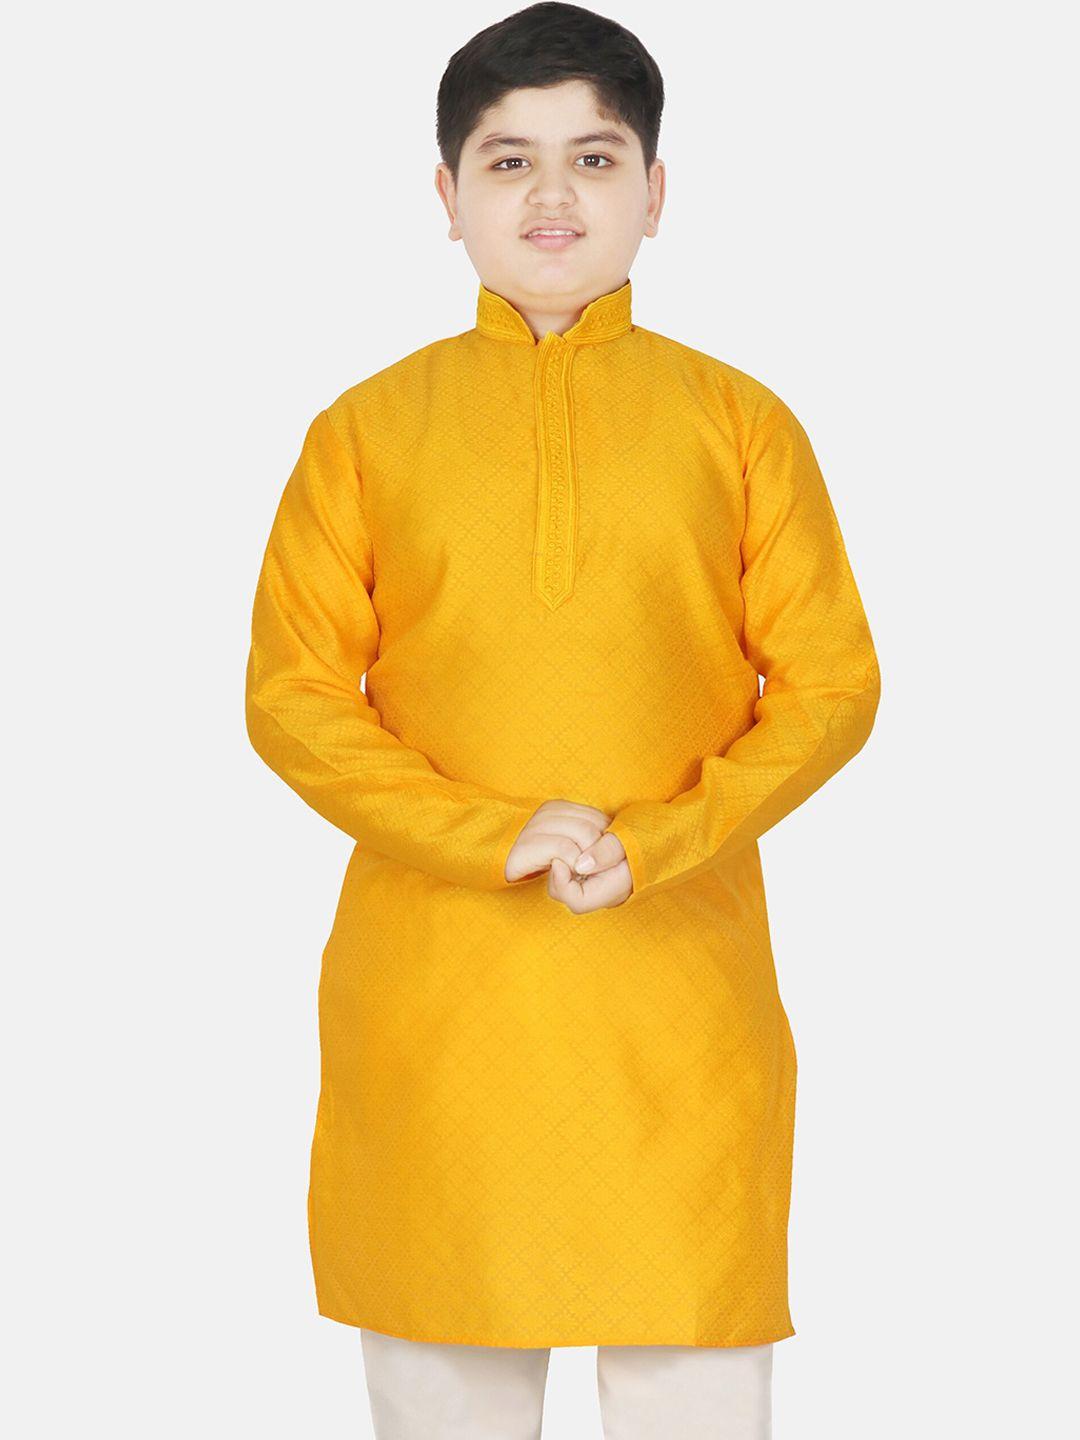 sg yuvraj boys ethnic motifs woven design mandarin collar long sleeves kurta